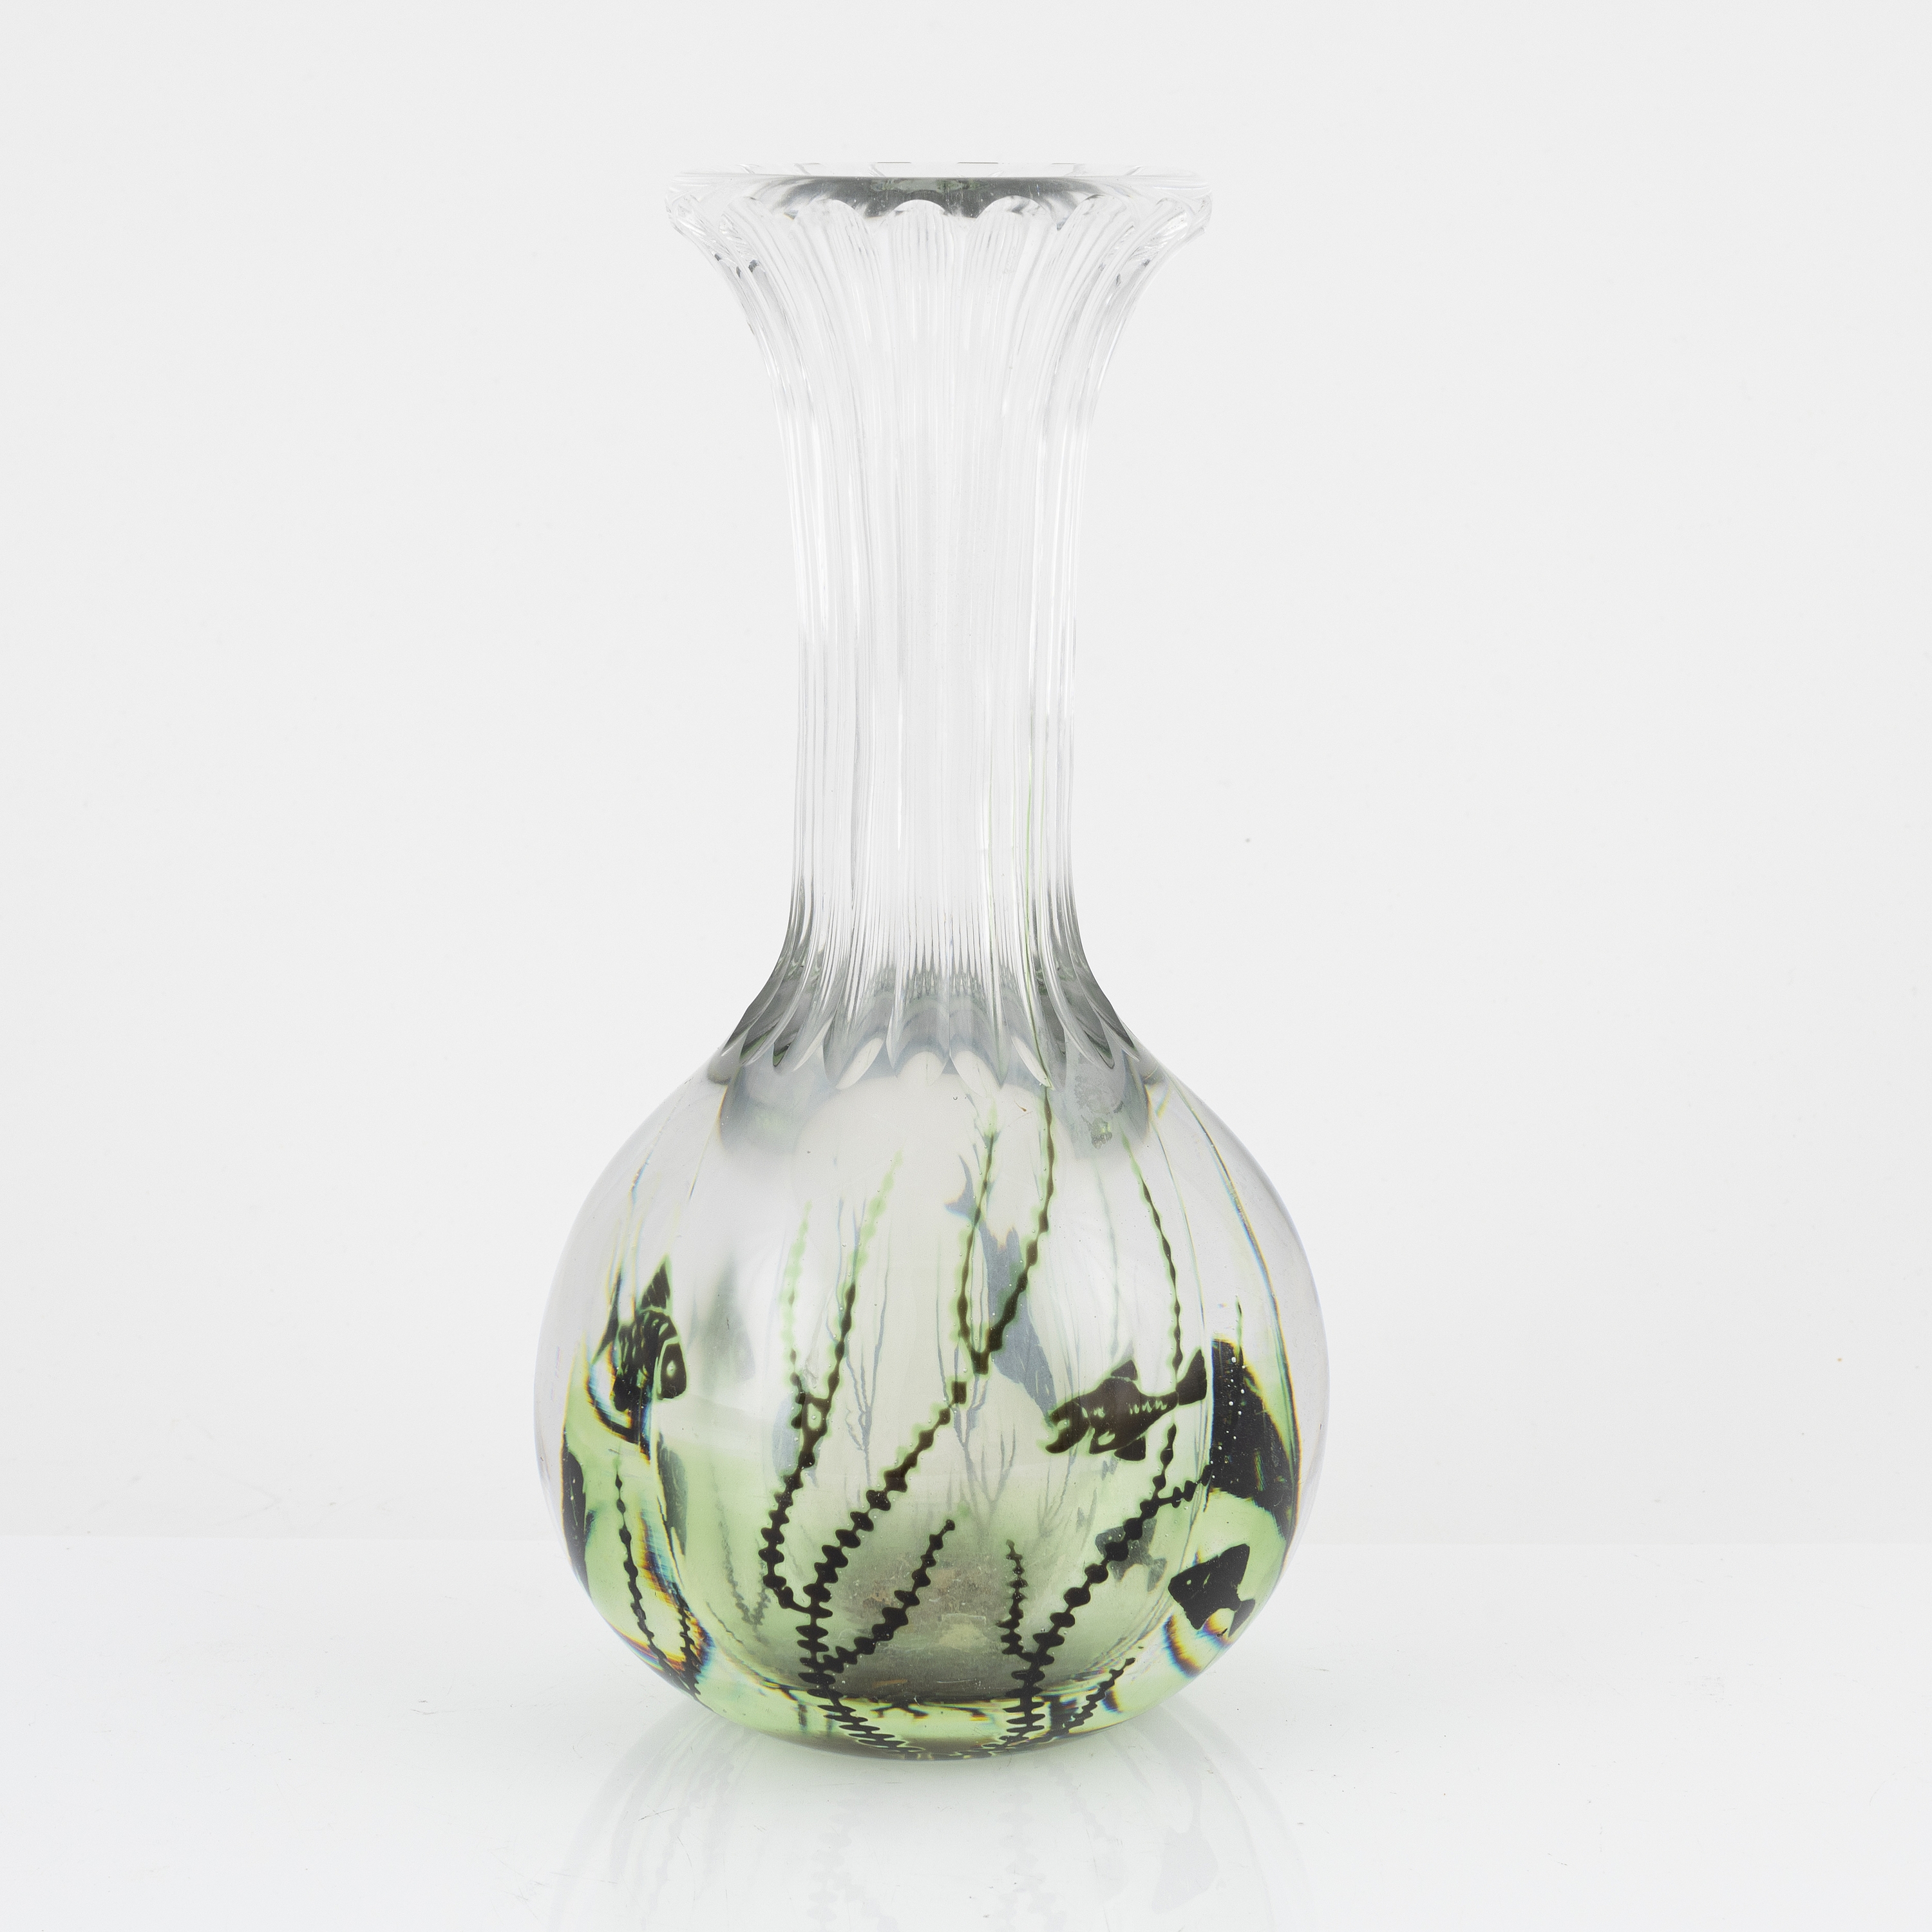 Artwork by Edward Hald, Edward Hald, a graal glass vase, Orrefors, Sweden, signed., Made of green decoration